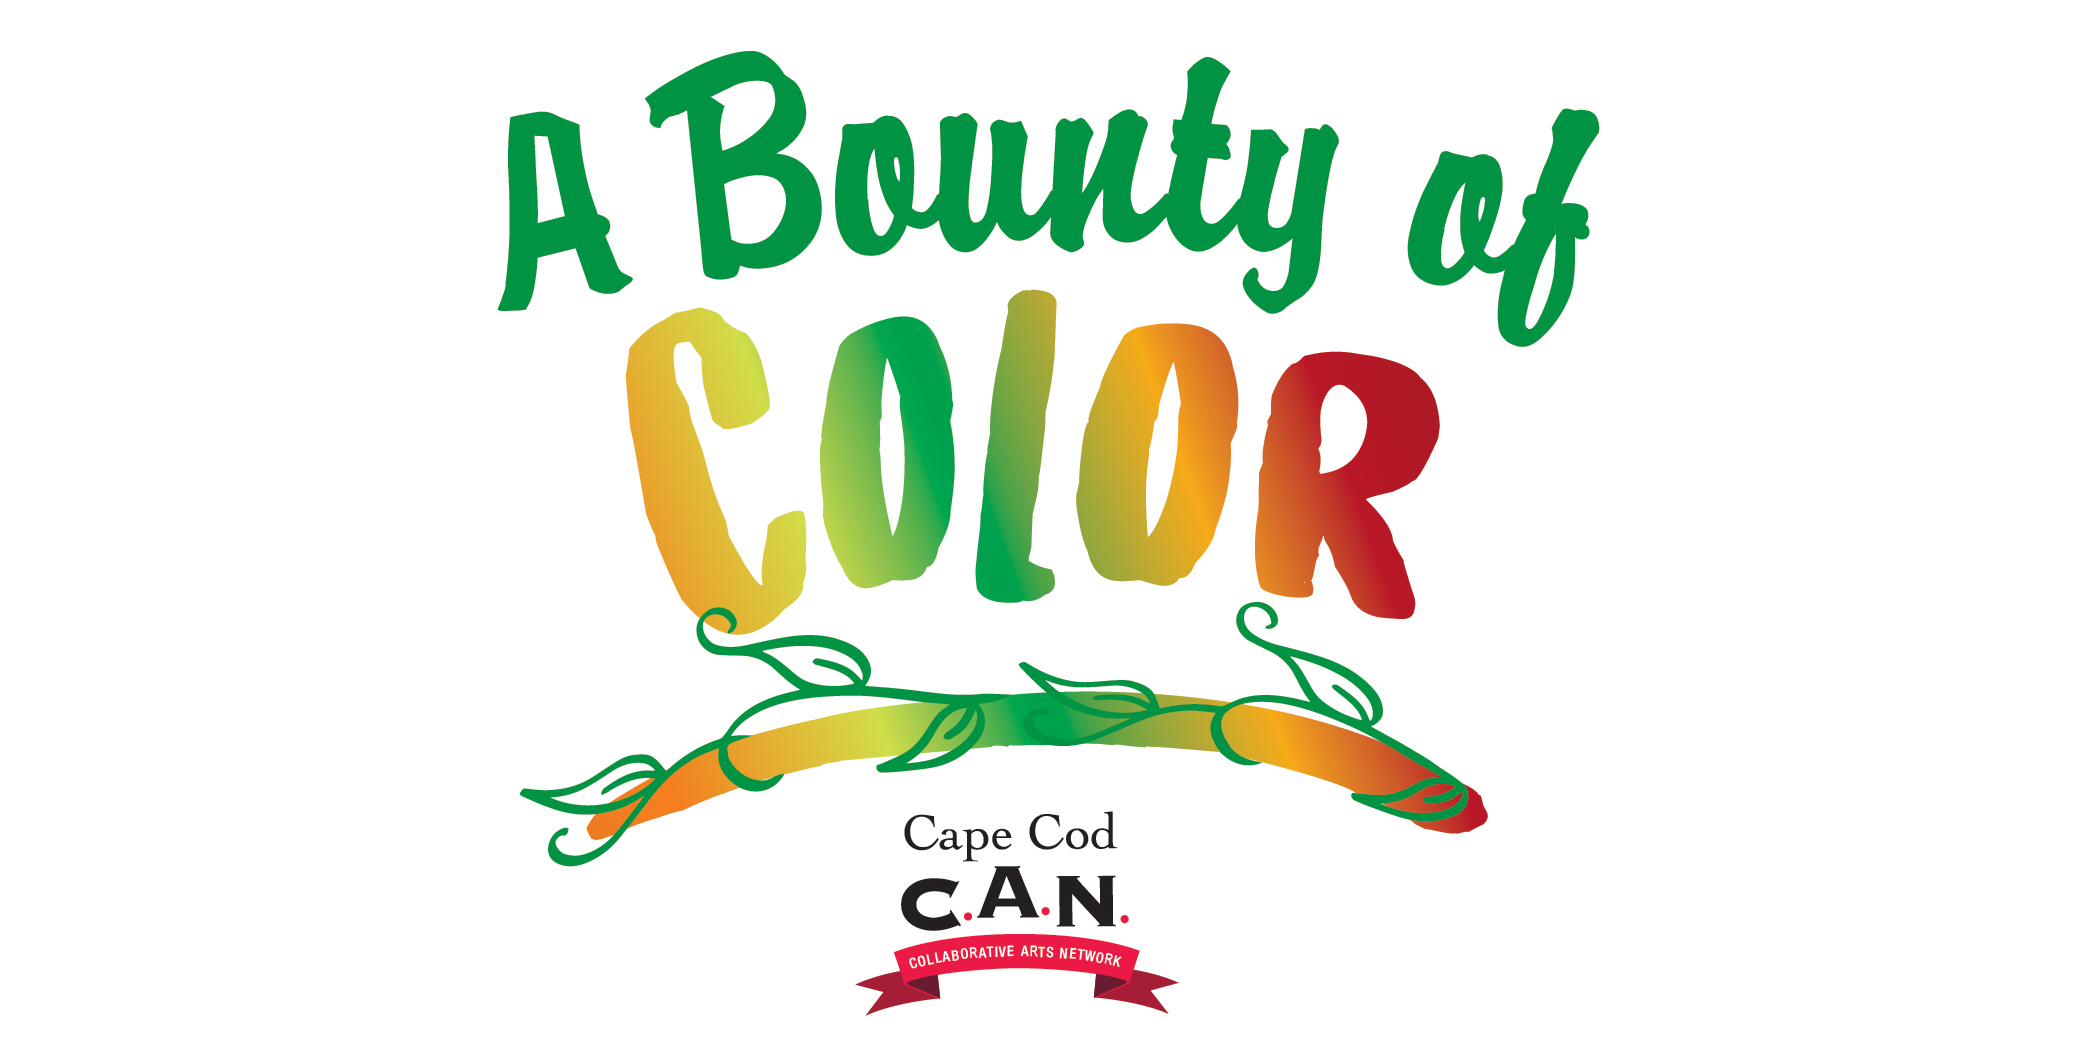 Bounty of color logo copy 01